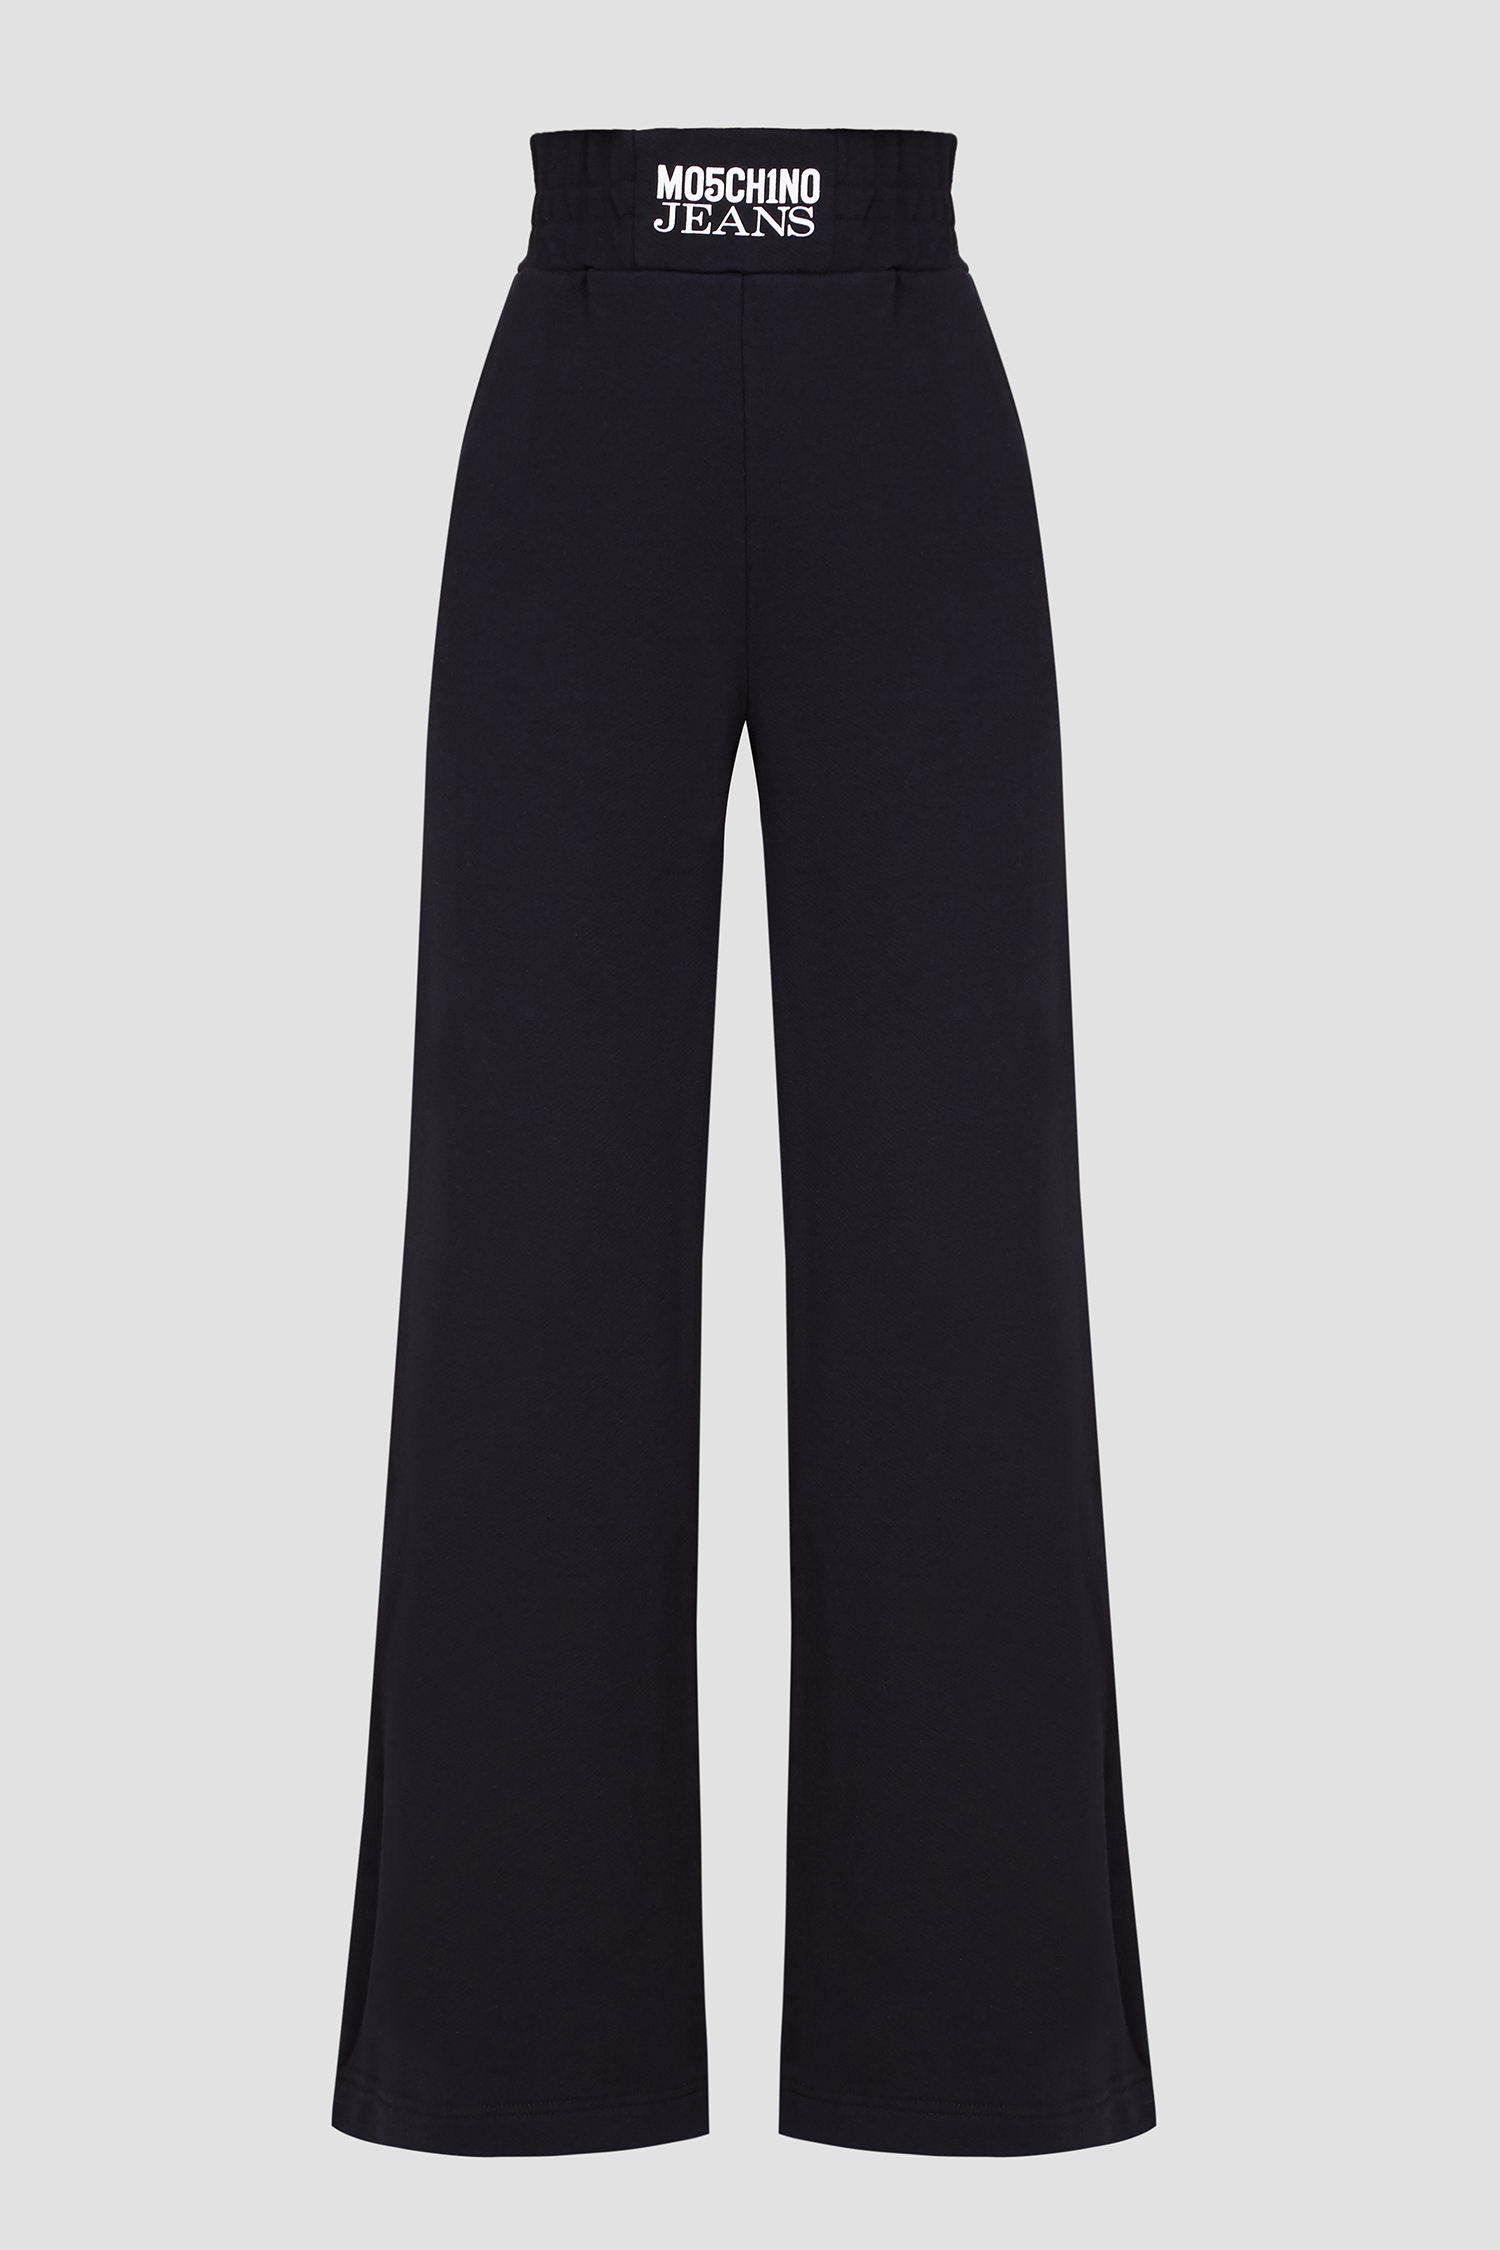 Жіночі чорні спортивні штани Moschino J0311.8756;5555